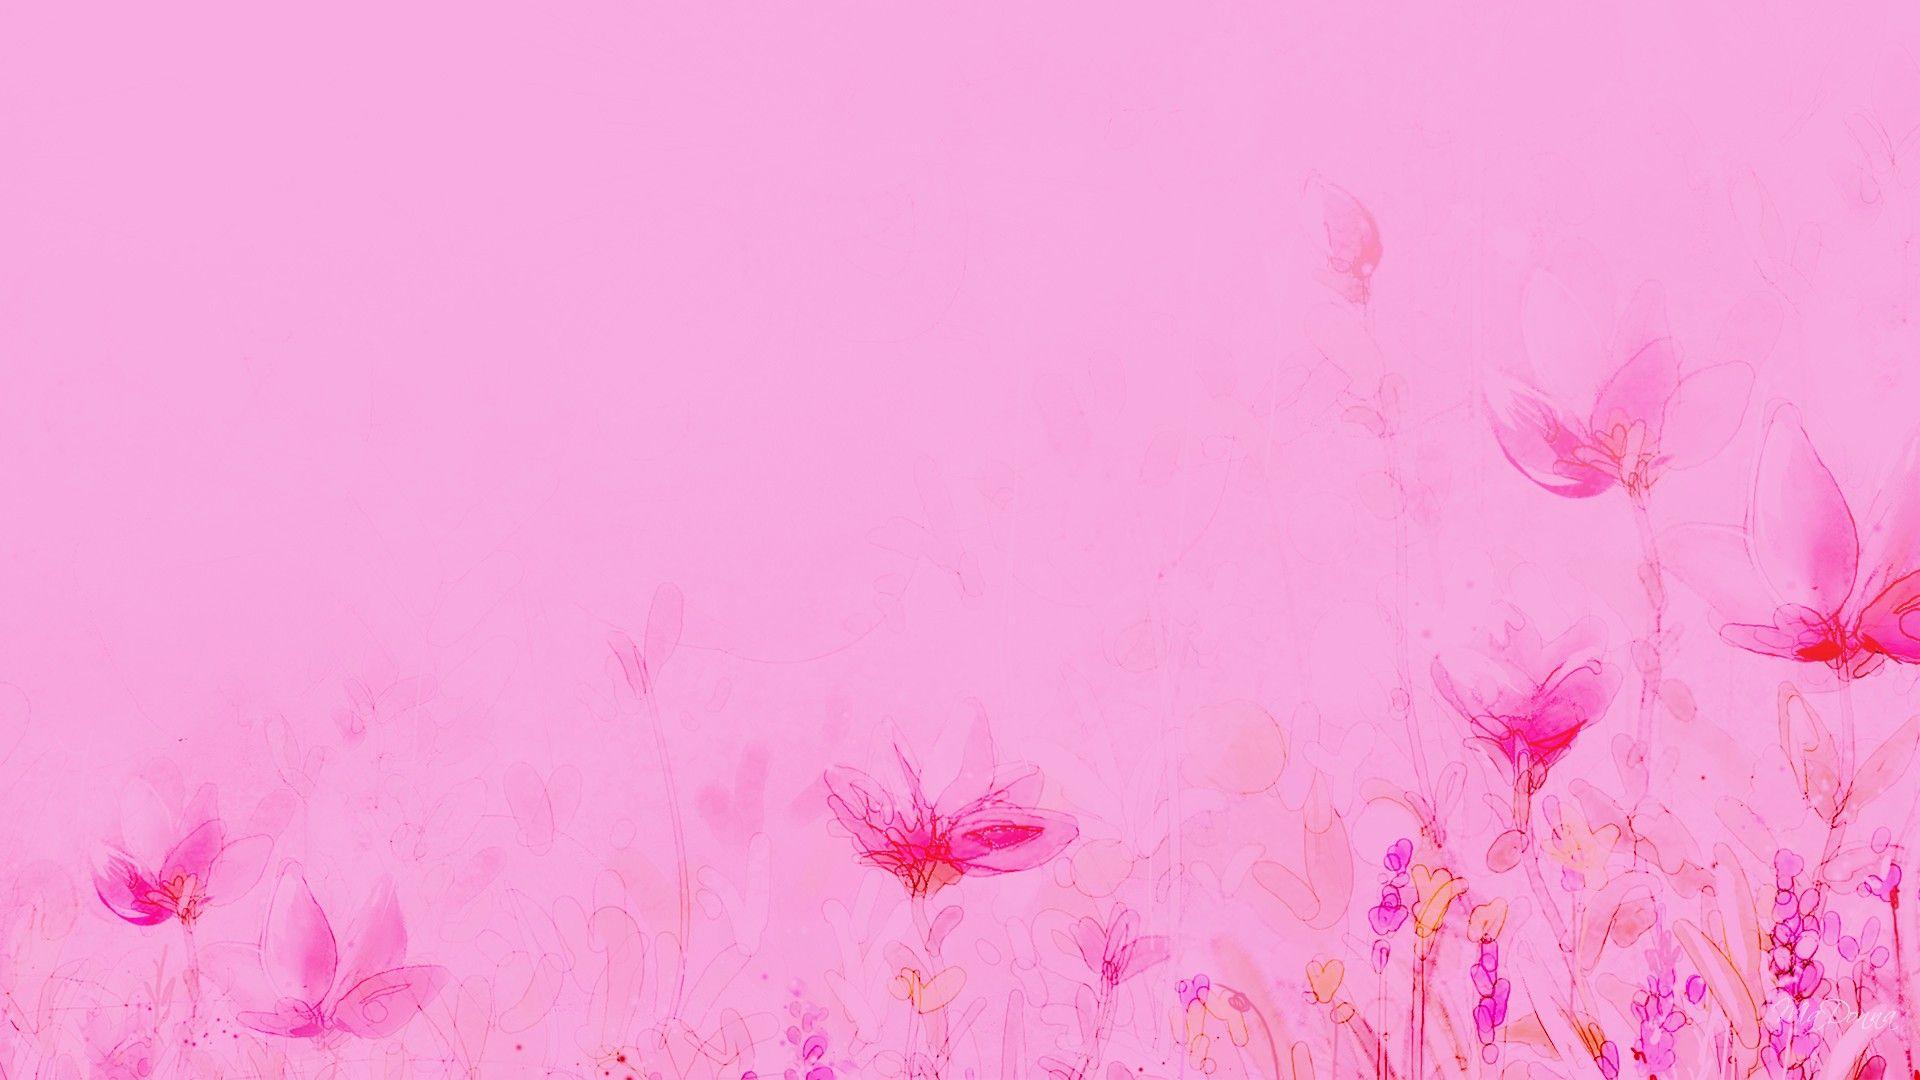 48 Light Pink Wallpaper Images  WallpaperSafari